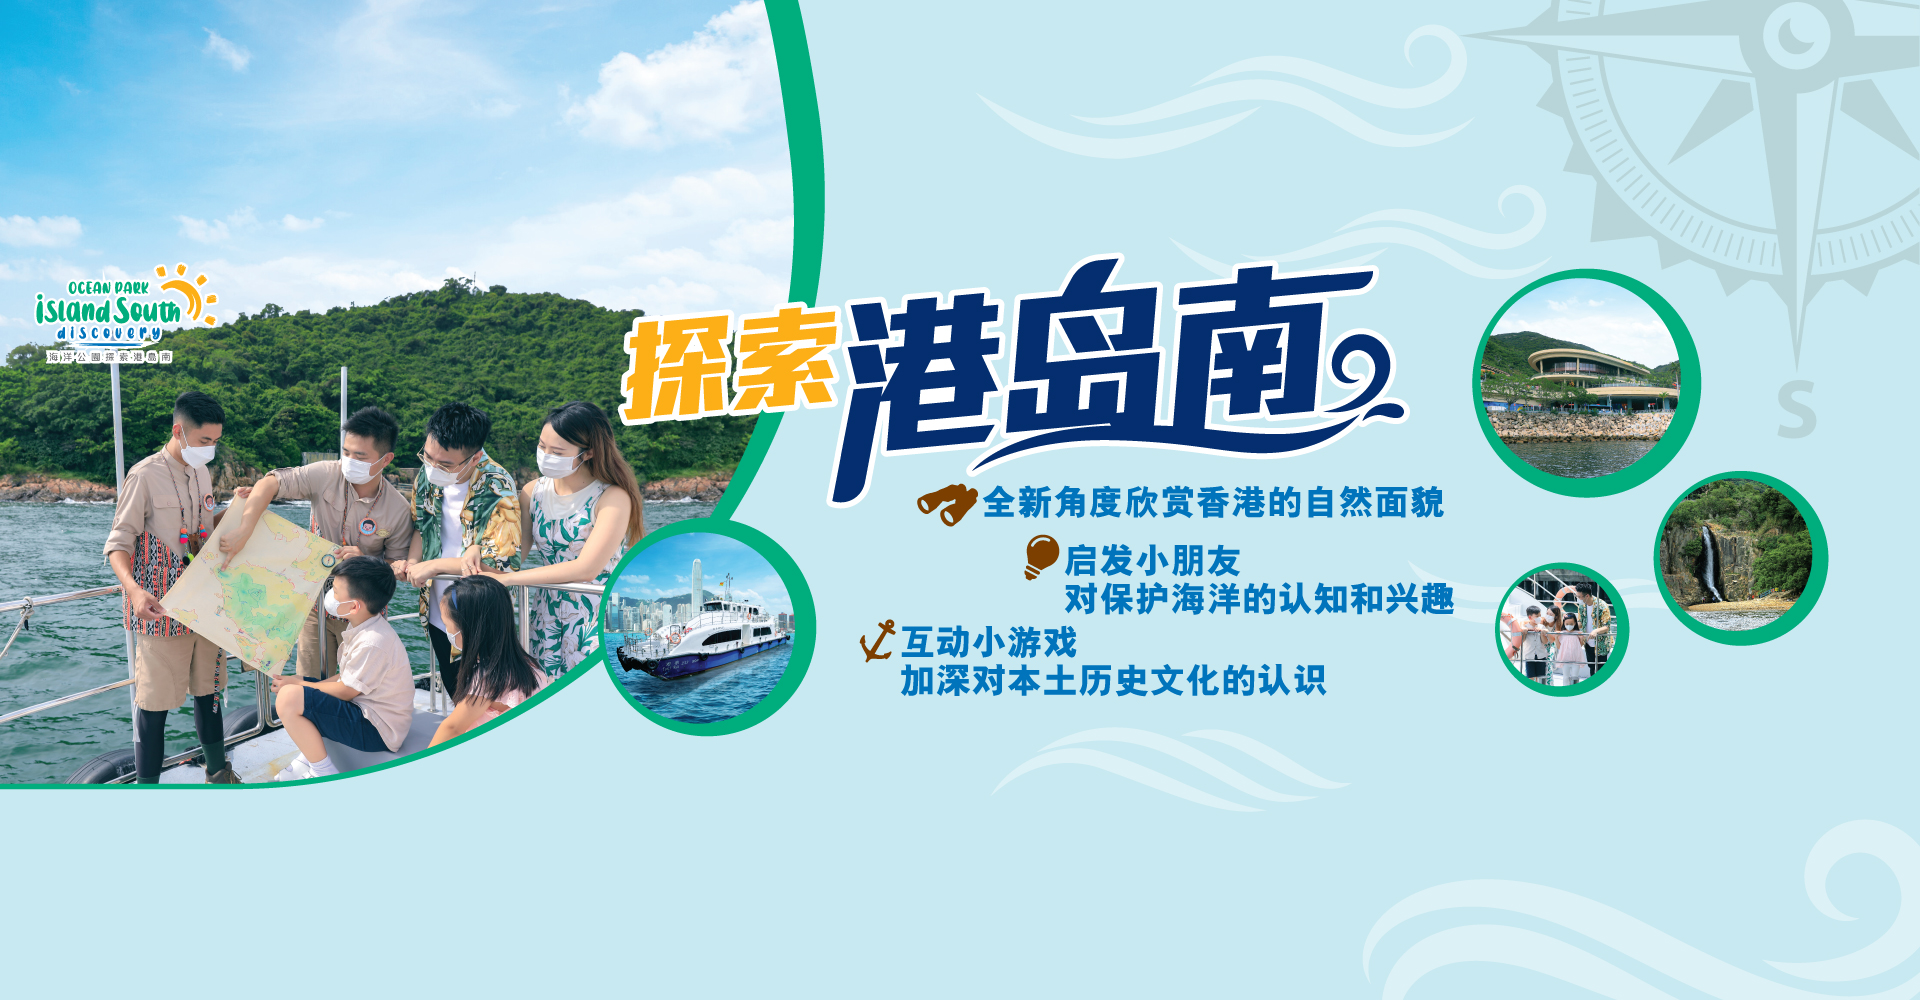 https://media.oceanpark.com.hk/files/s3fs-public/little-voyager-innerpage-desktop-banner-sc_1.jpg